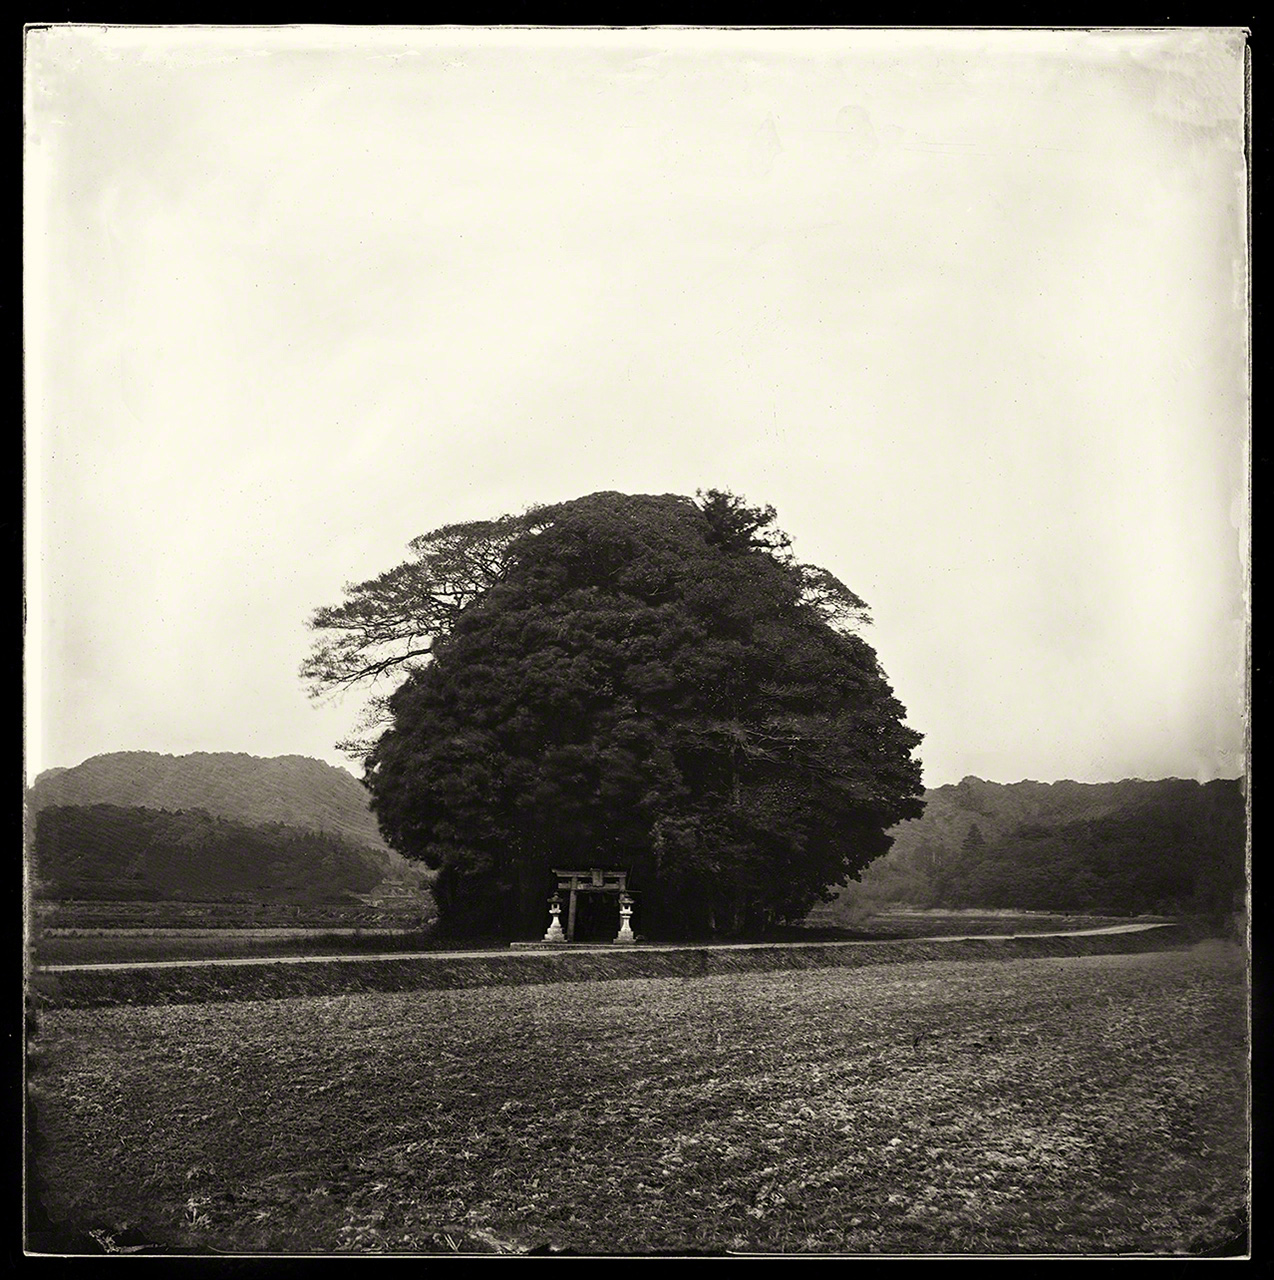 Un antiguo montículo funerario en un arrozal. Según una leyenda local, se pueden oír voces de espíritus en los árboles.